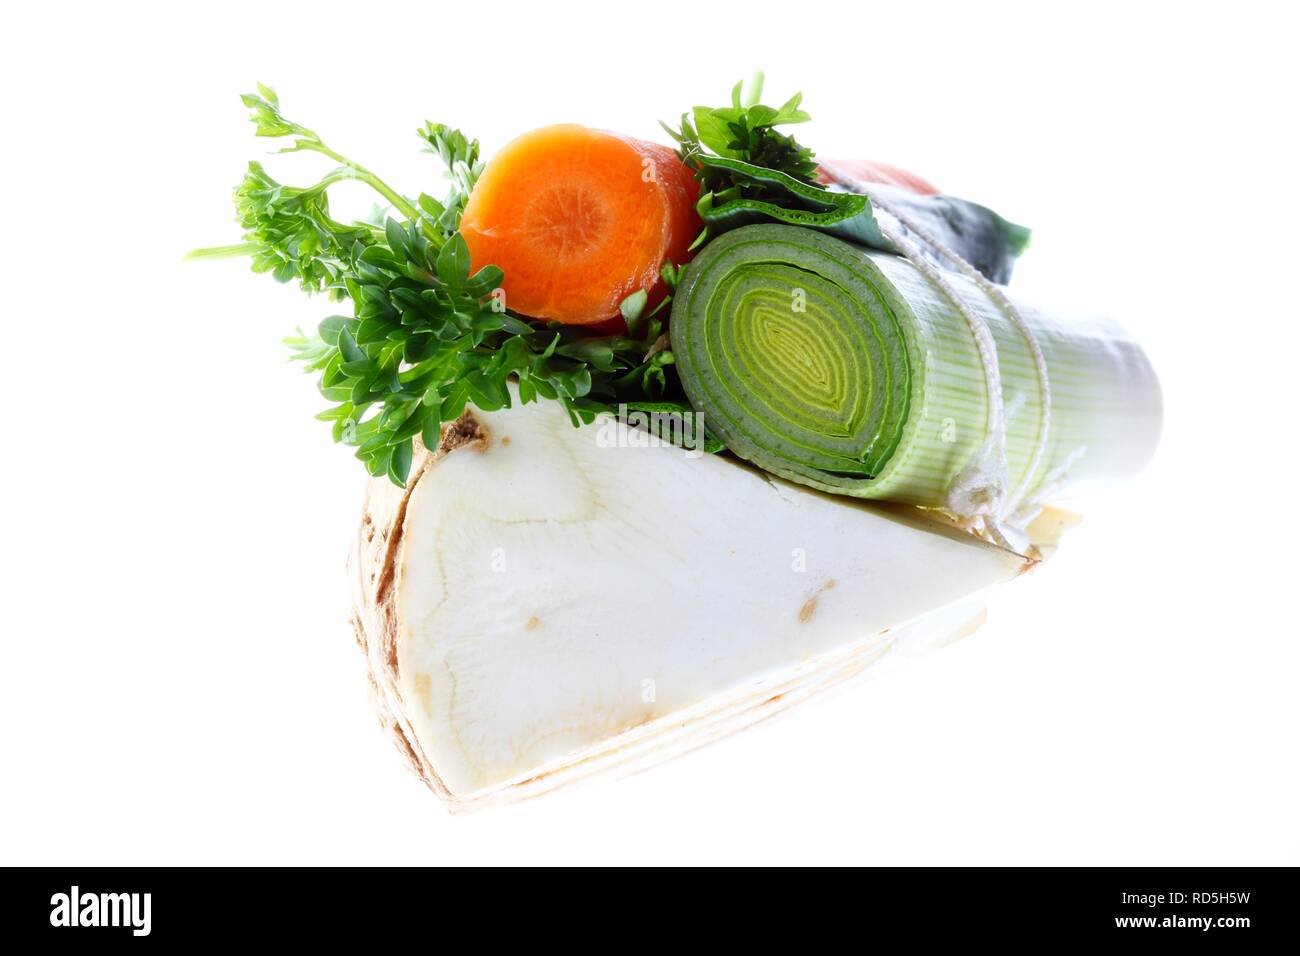 Abgepackte Gemüse für die Suppe, Mirepoix oder Suppengruen mit Sellerie,  Lauch, Karotte, Petersilie Stockfotografie - Alamy